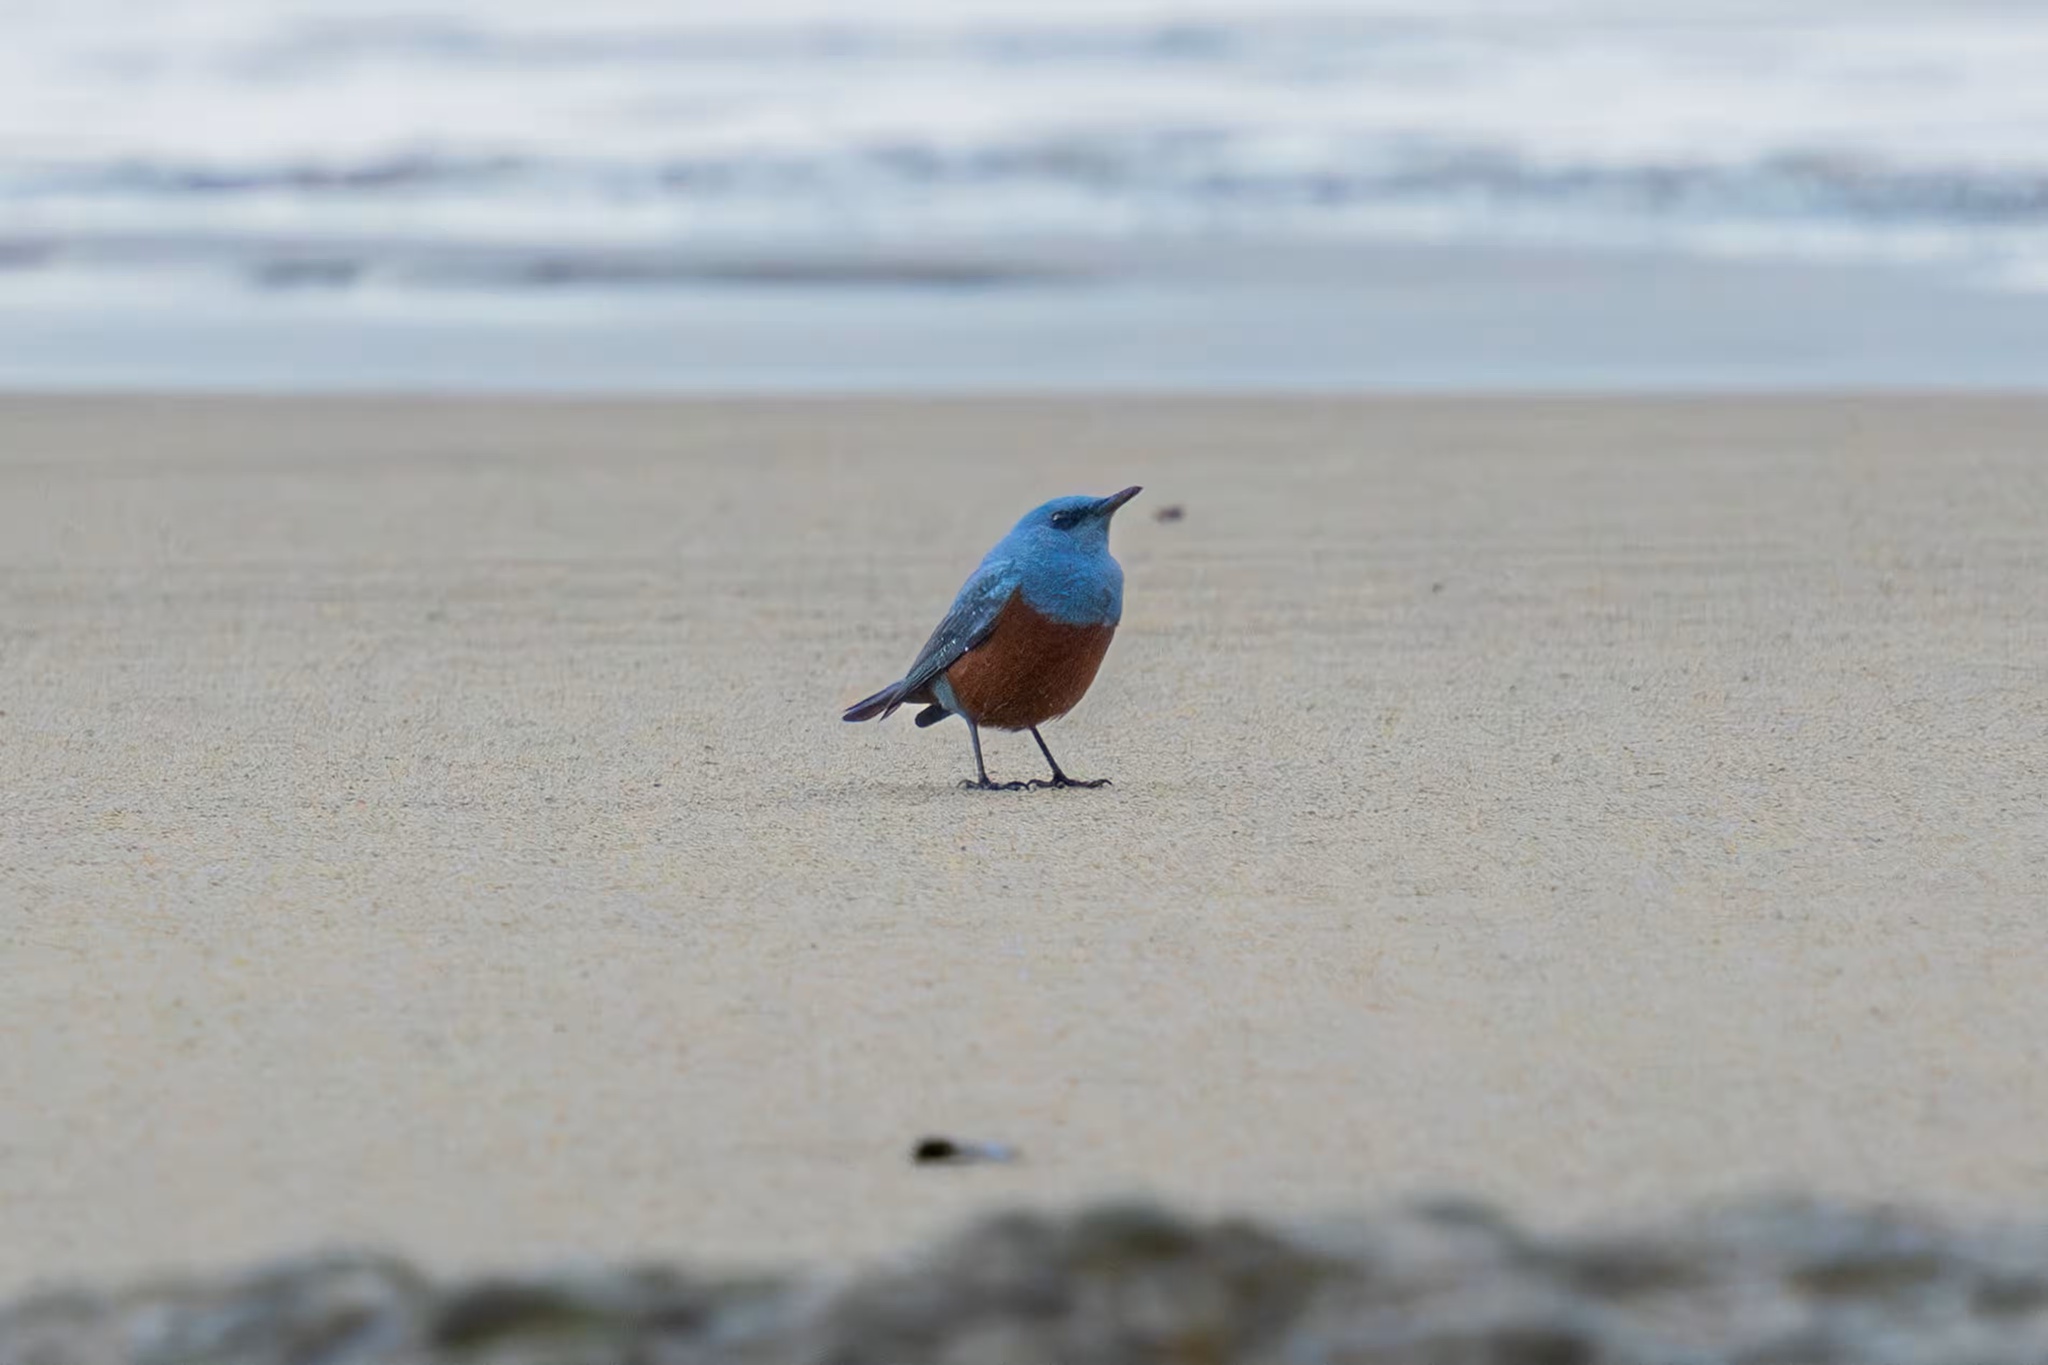 Un pájaro azul deleita a los amantes de las aves en EE.UU. |  Biodiversidad